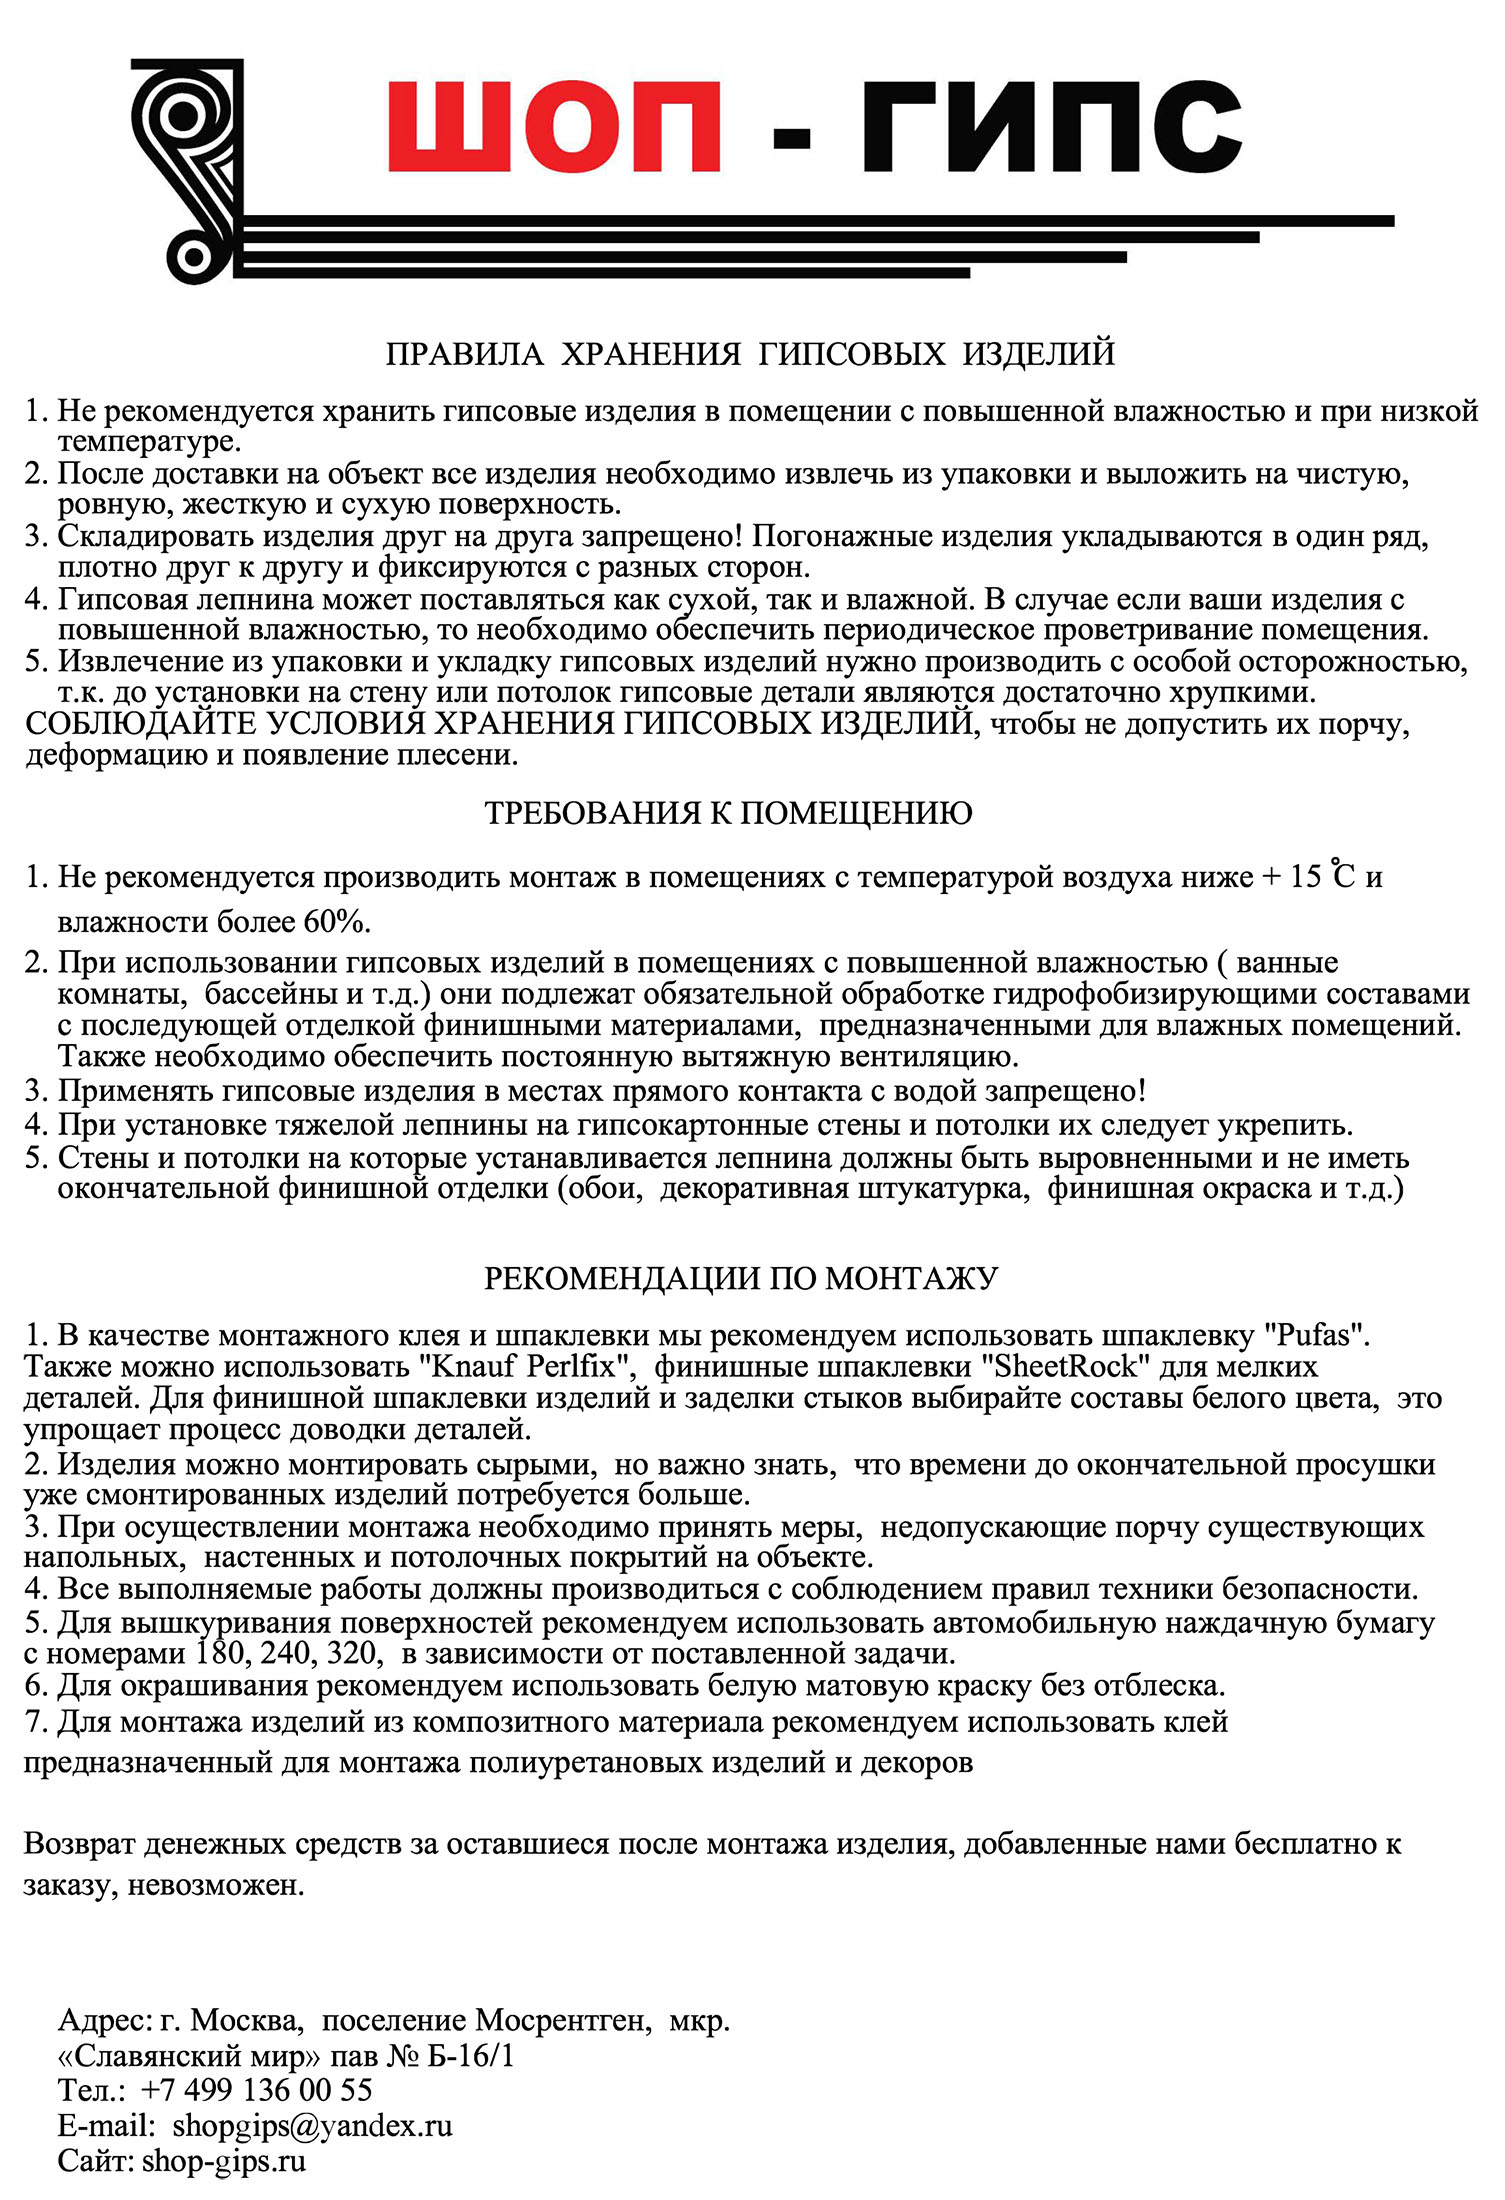 pravila_khraneniya_i_materialy_dlya_montazha.jpg